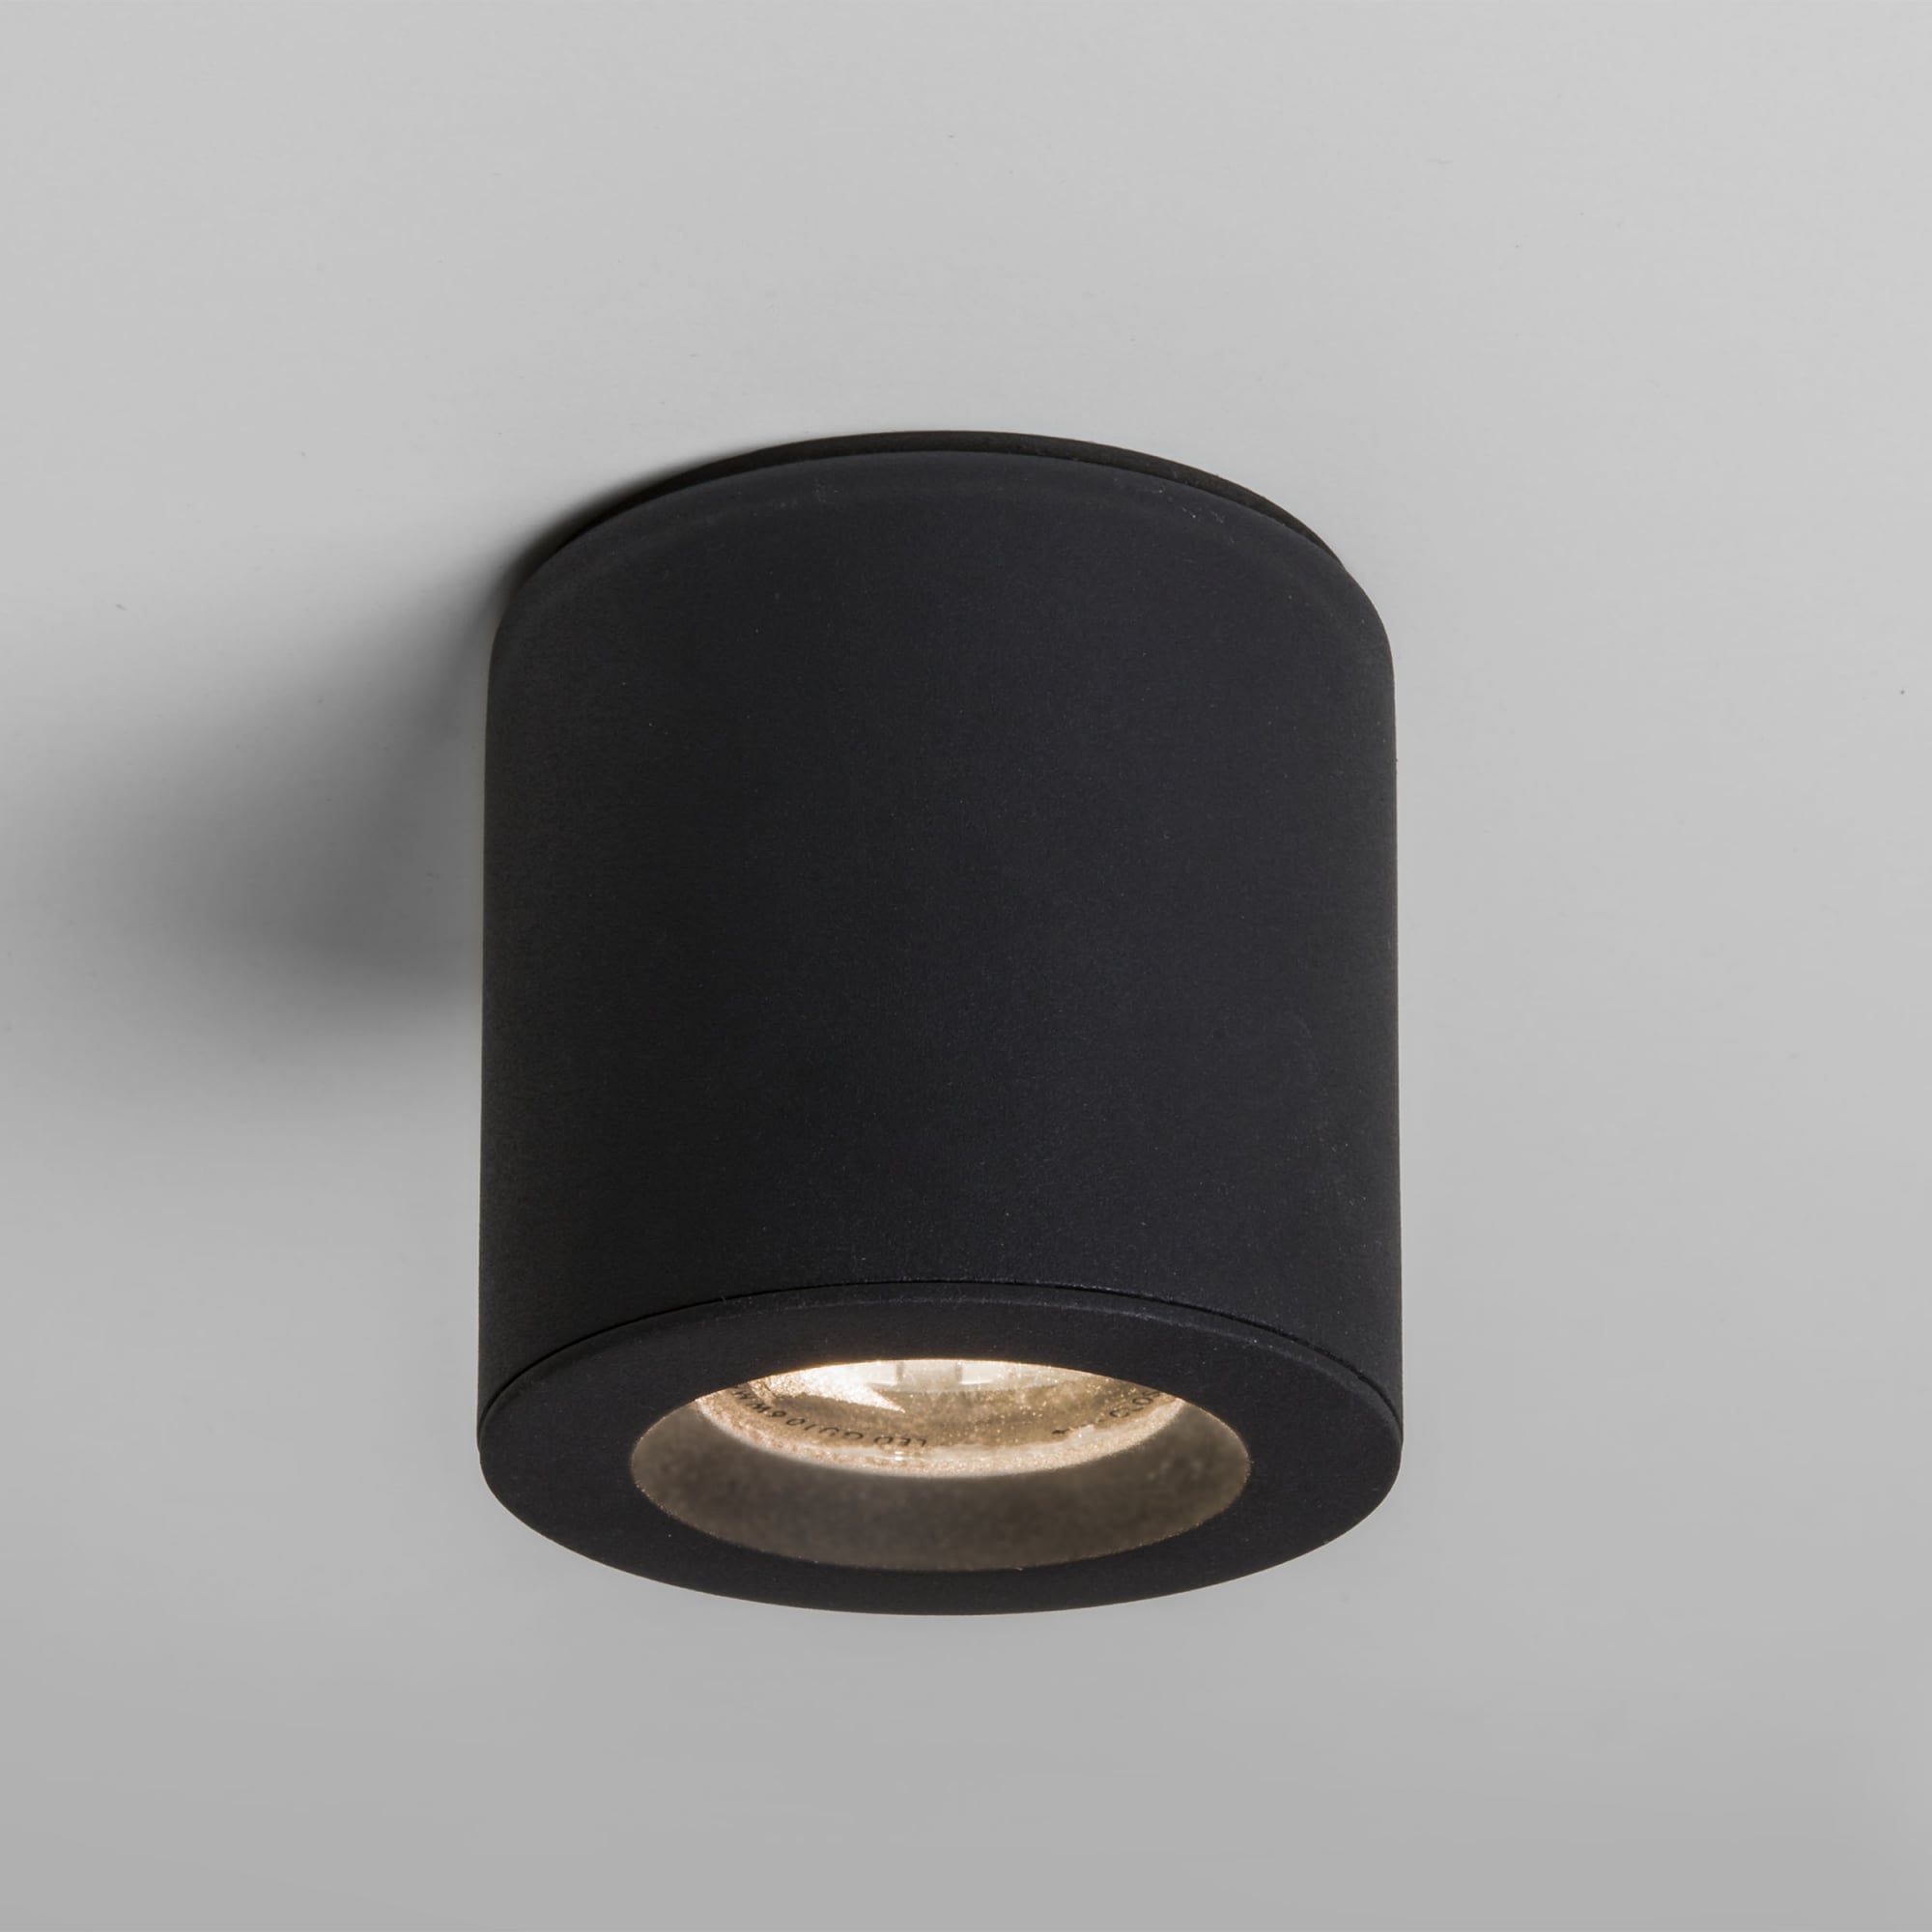 Kos Modern Black Ceiling Cylinder Led Light